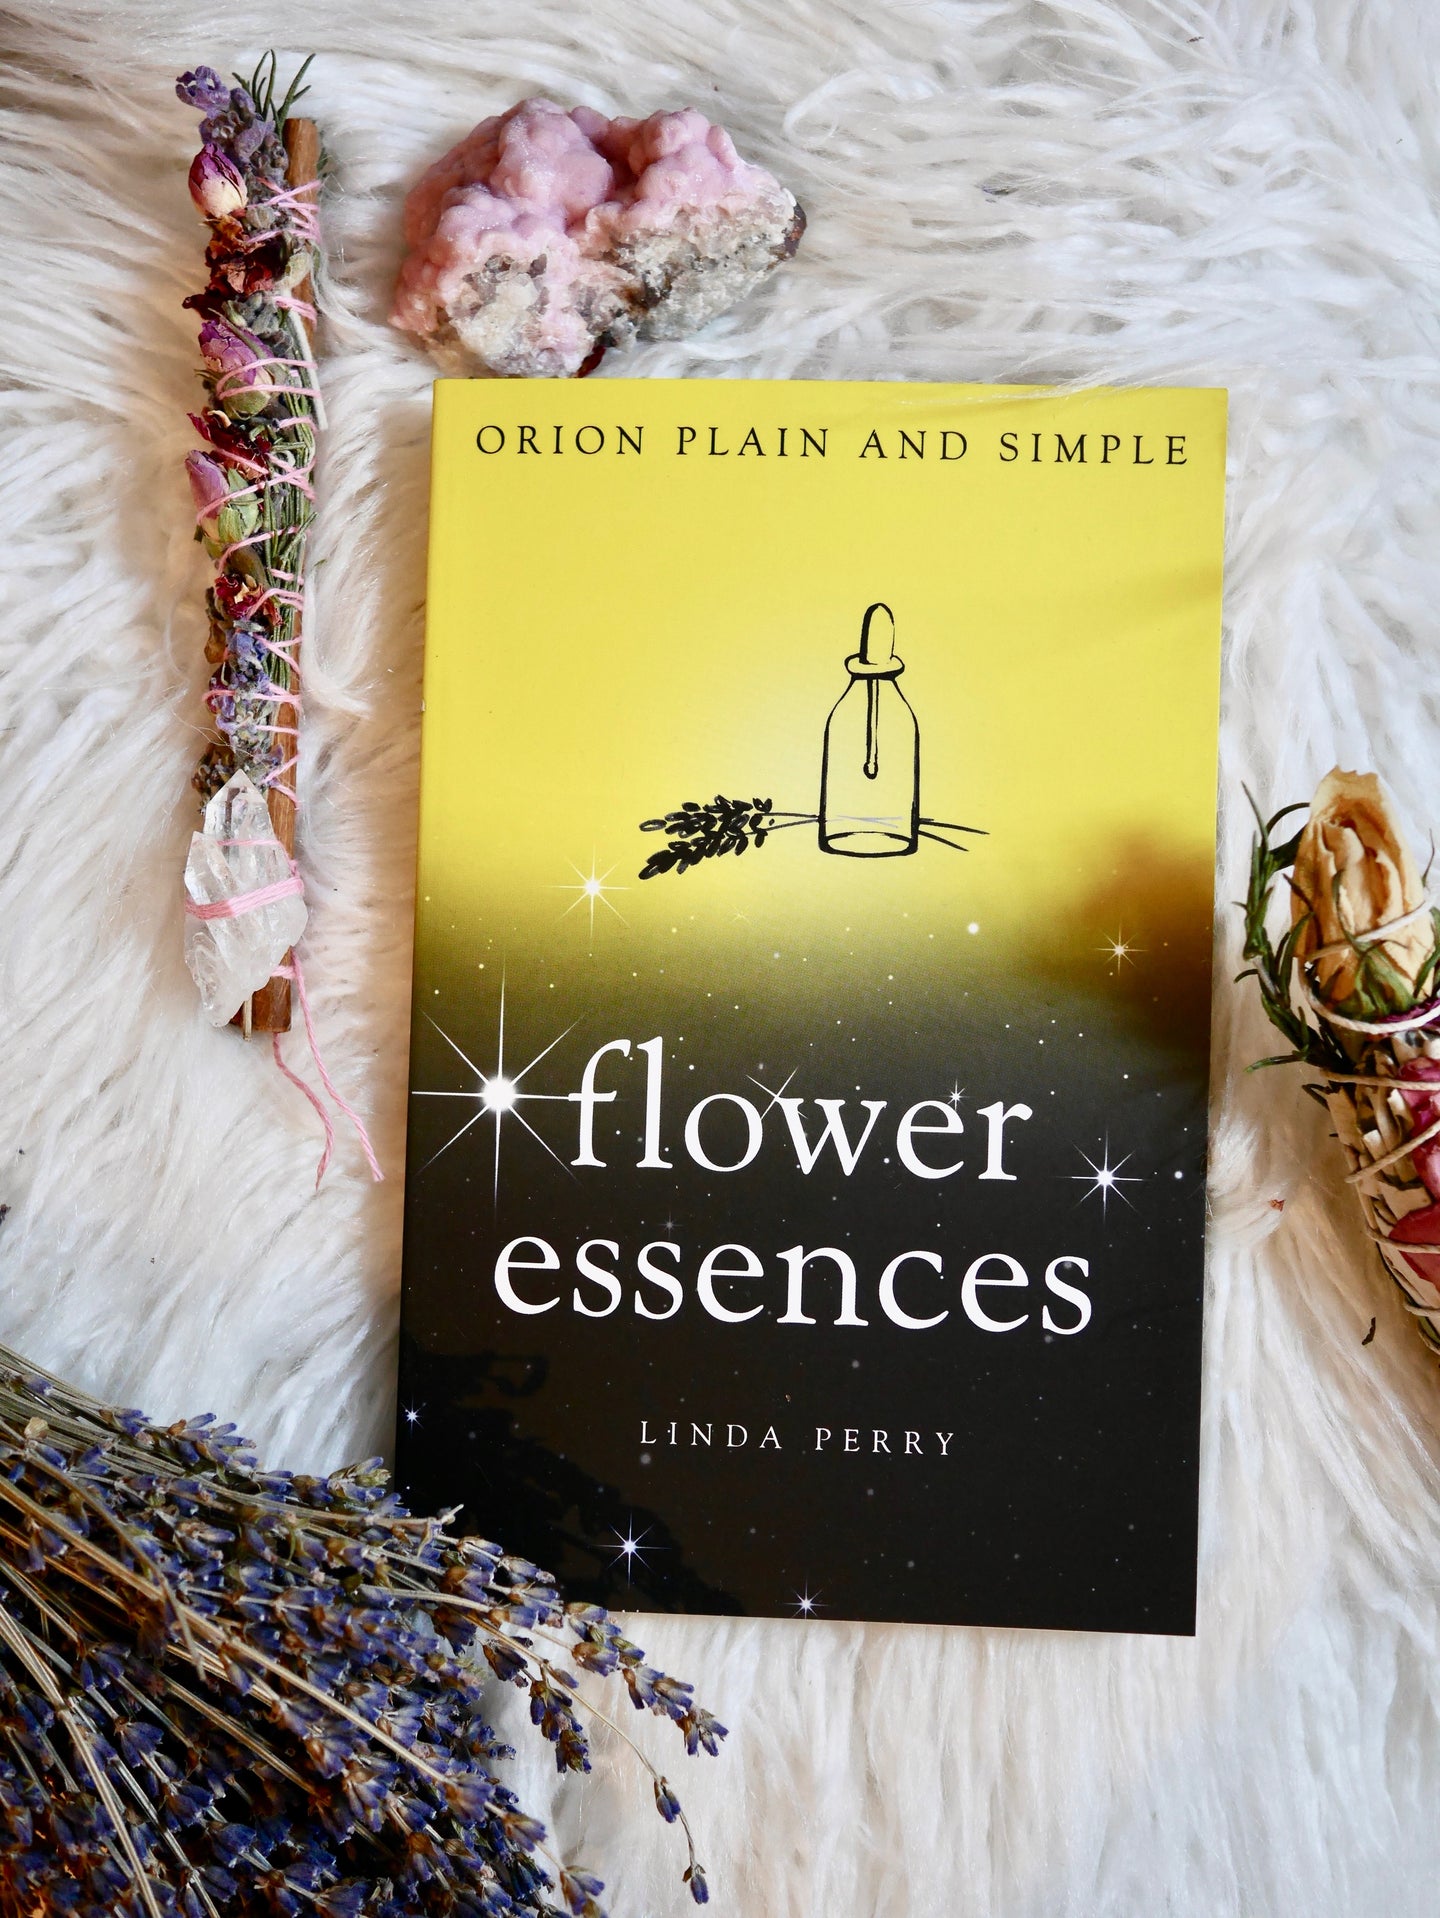 Flower essences, Orion plain and simple